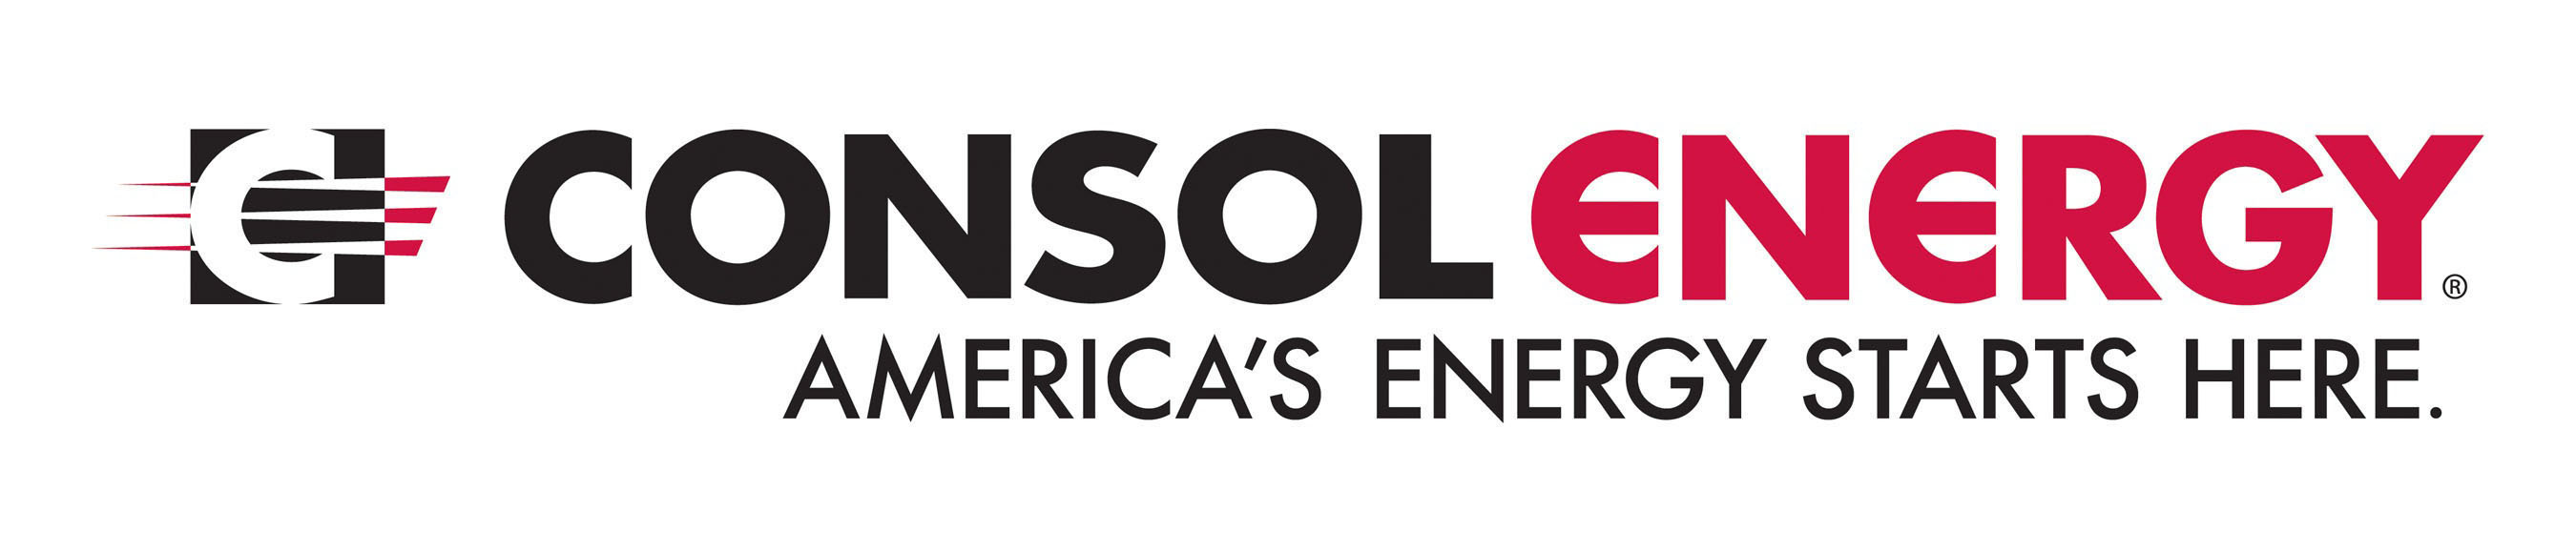 CONSOL Energy Logo. (PRNewsFoto/CONSOL Energy Inc.) (PRNewsFoto/)